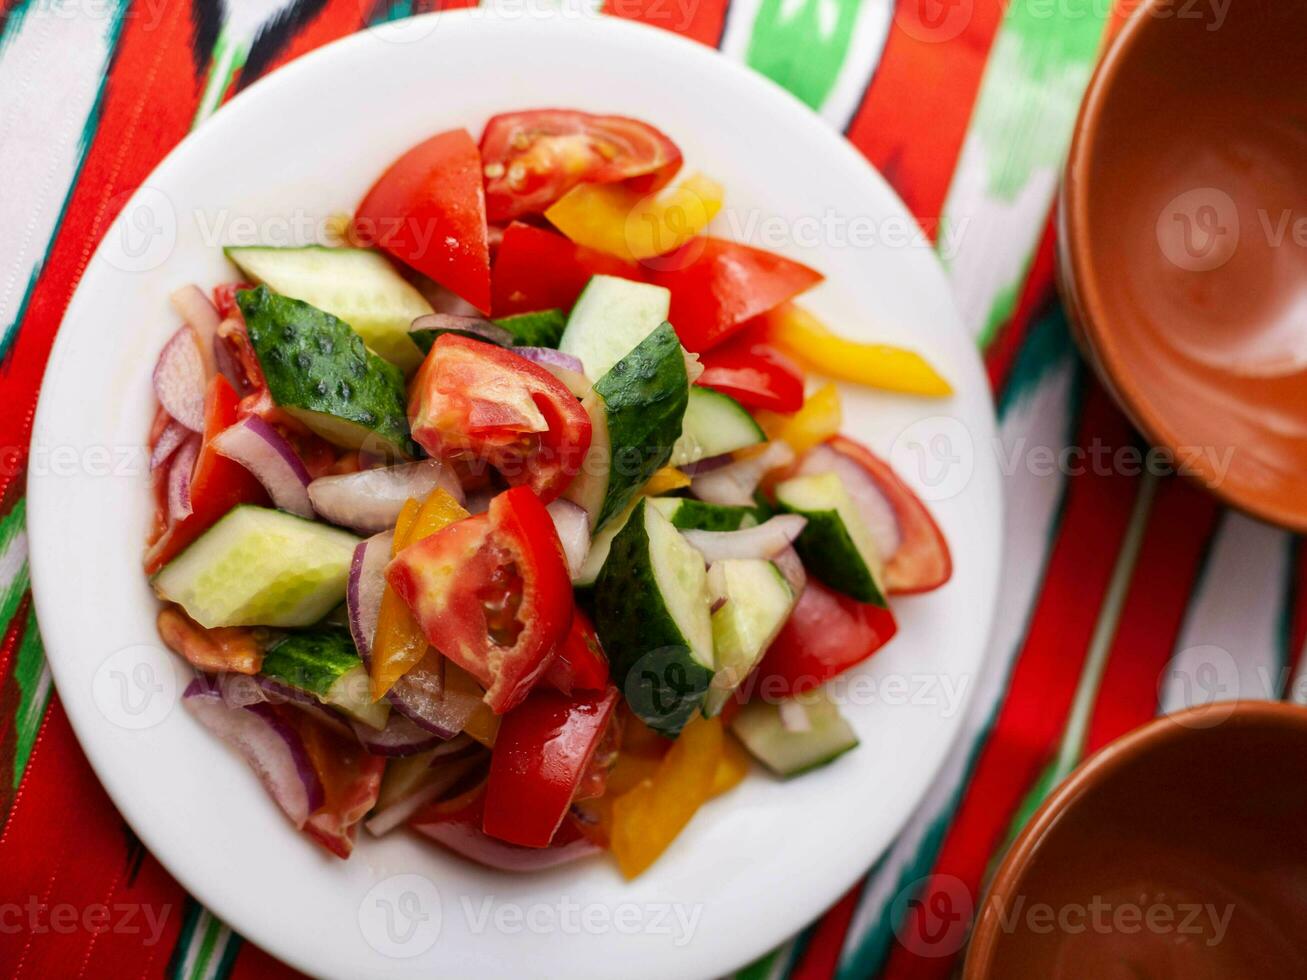 tomate, pepino, doce Pimenta e cebola salada, temperado com óleo. ásia estilo foto